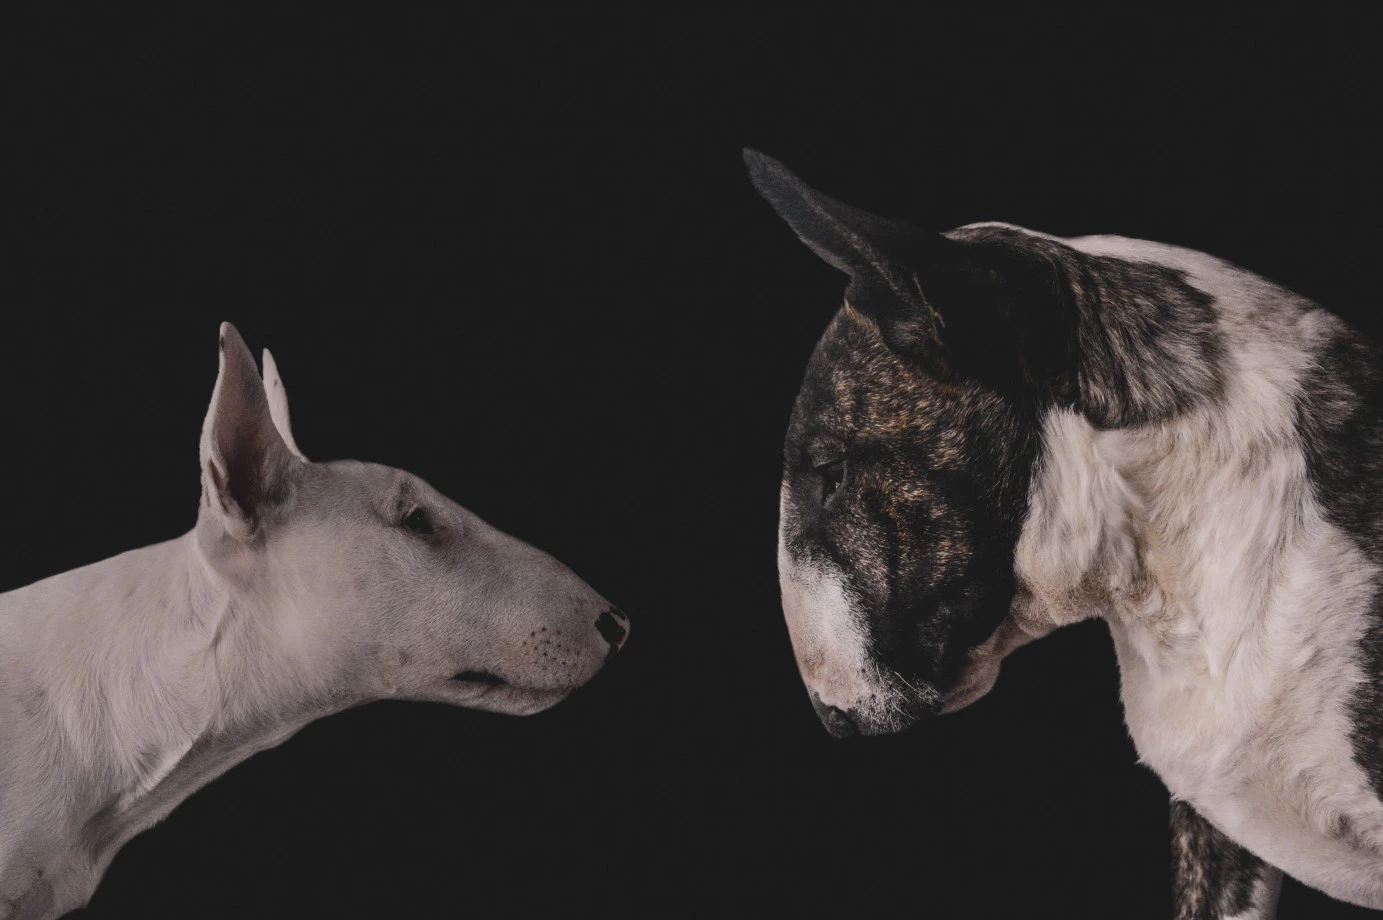 fotograf wroclaw norzalkiewiczph portfolio zdjecia zwierzat sesja zdjeciowa konie psy koty